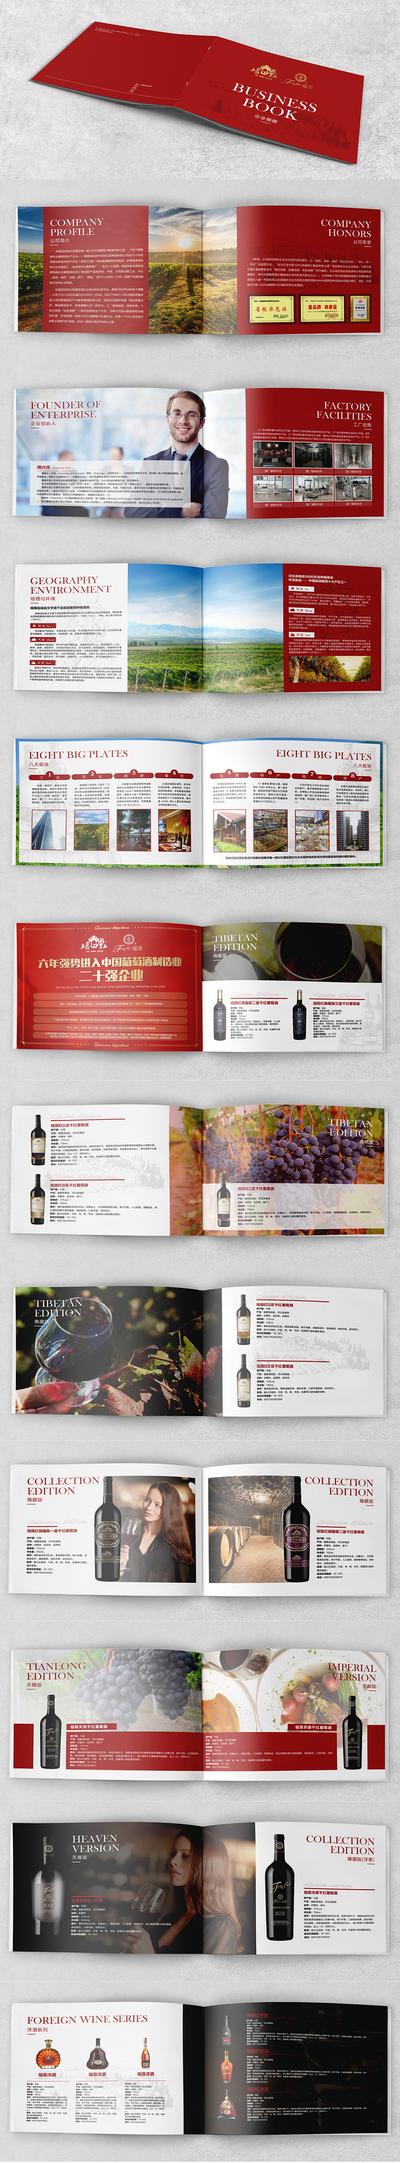 南门网 画册 宣传画册 红酒 高端 葡萄酒 企业 红金 品牌 荣誉 环境 设施